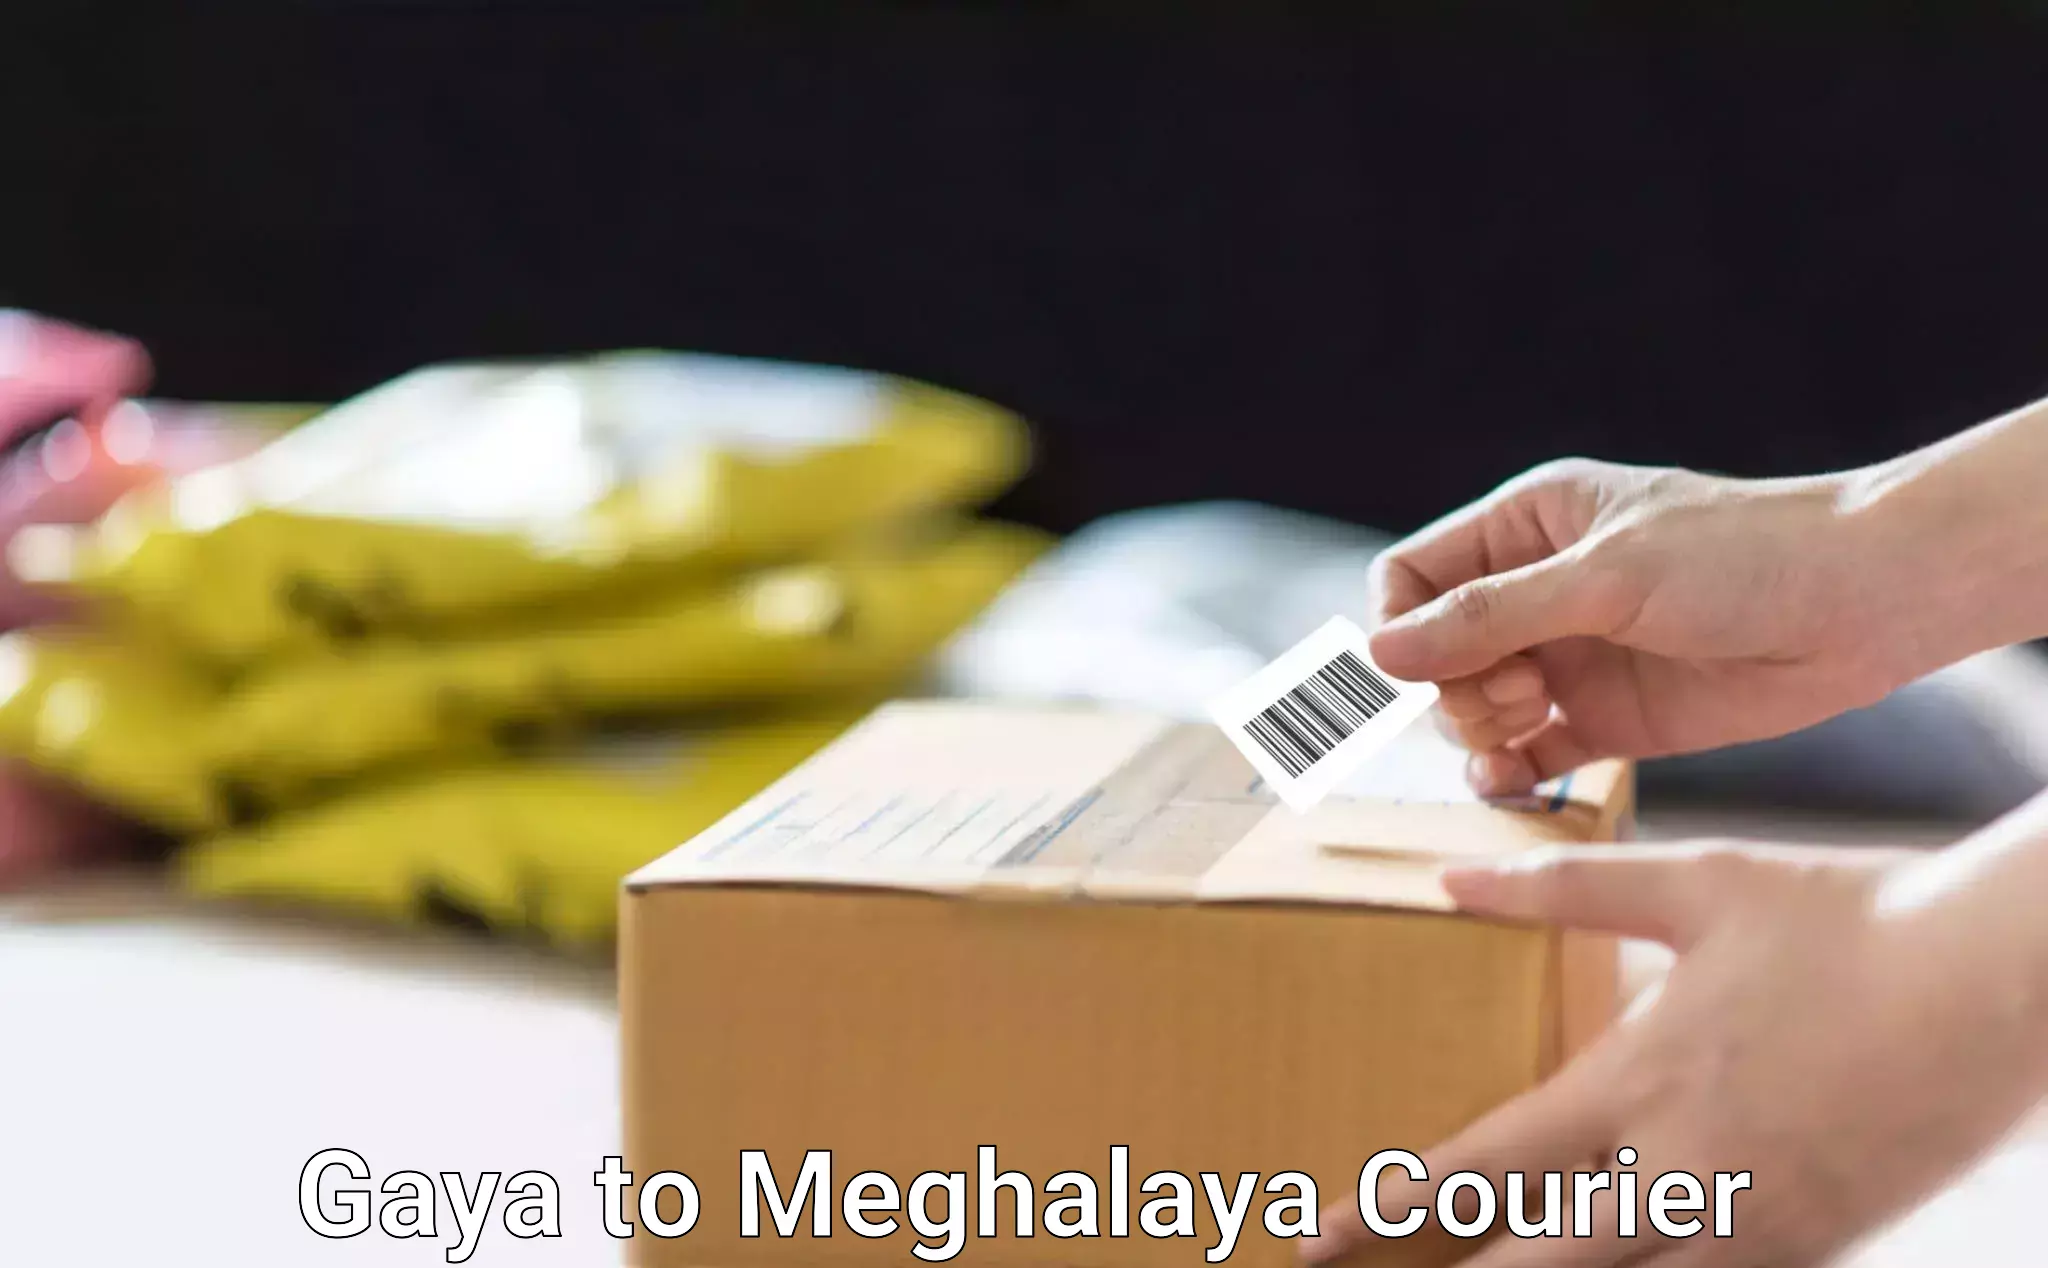 Customized furniture moving Gaya to Meghalaya